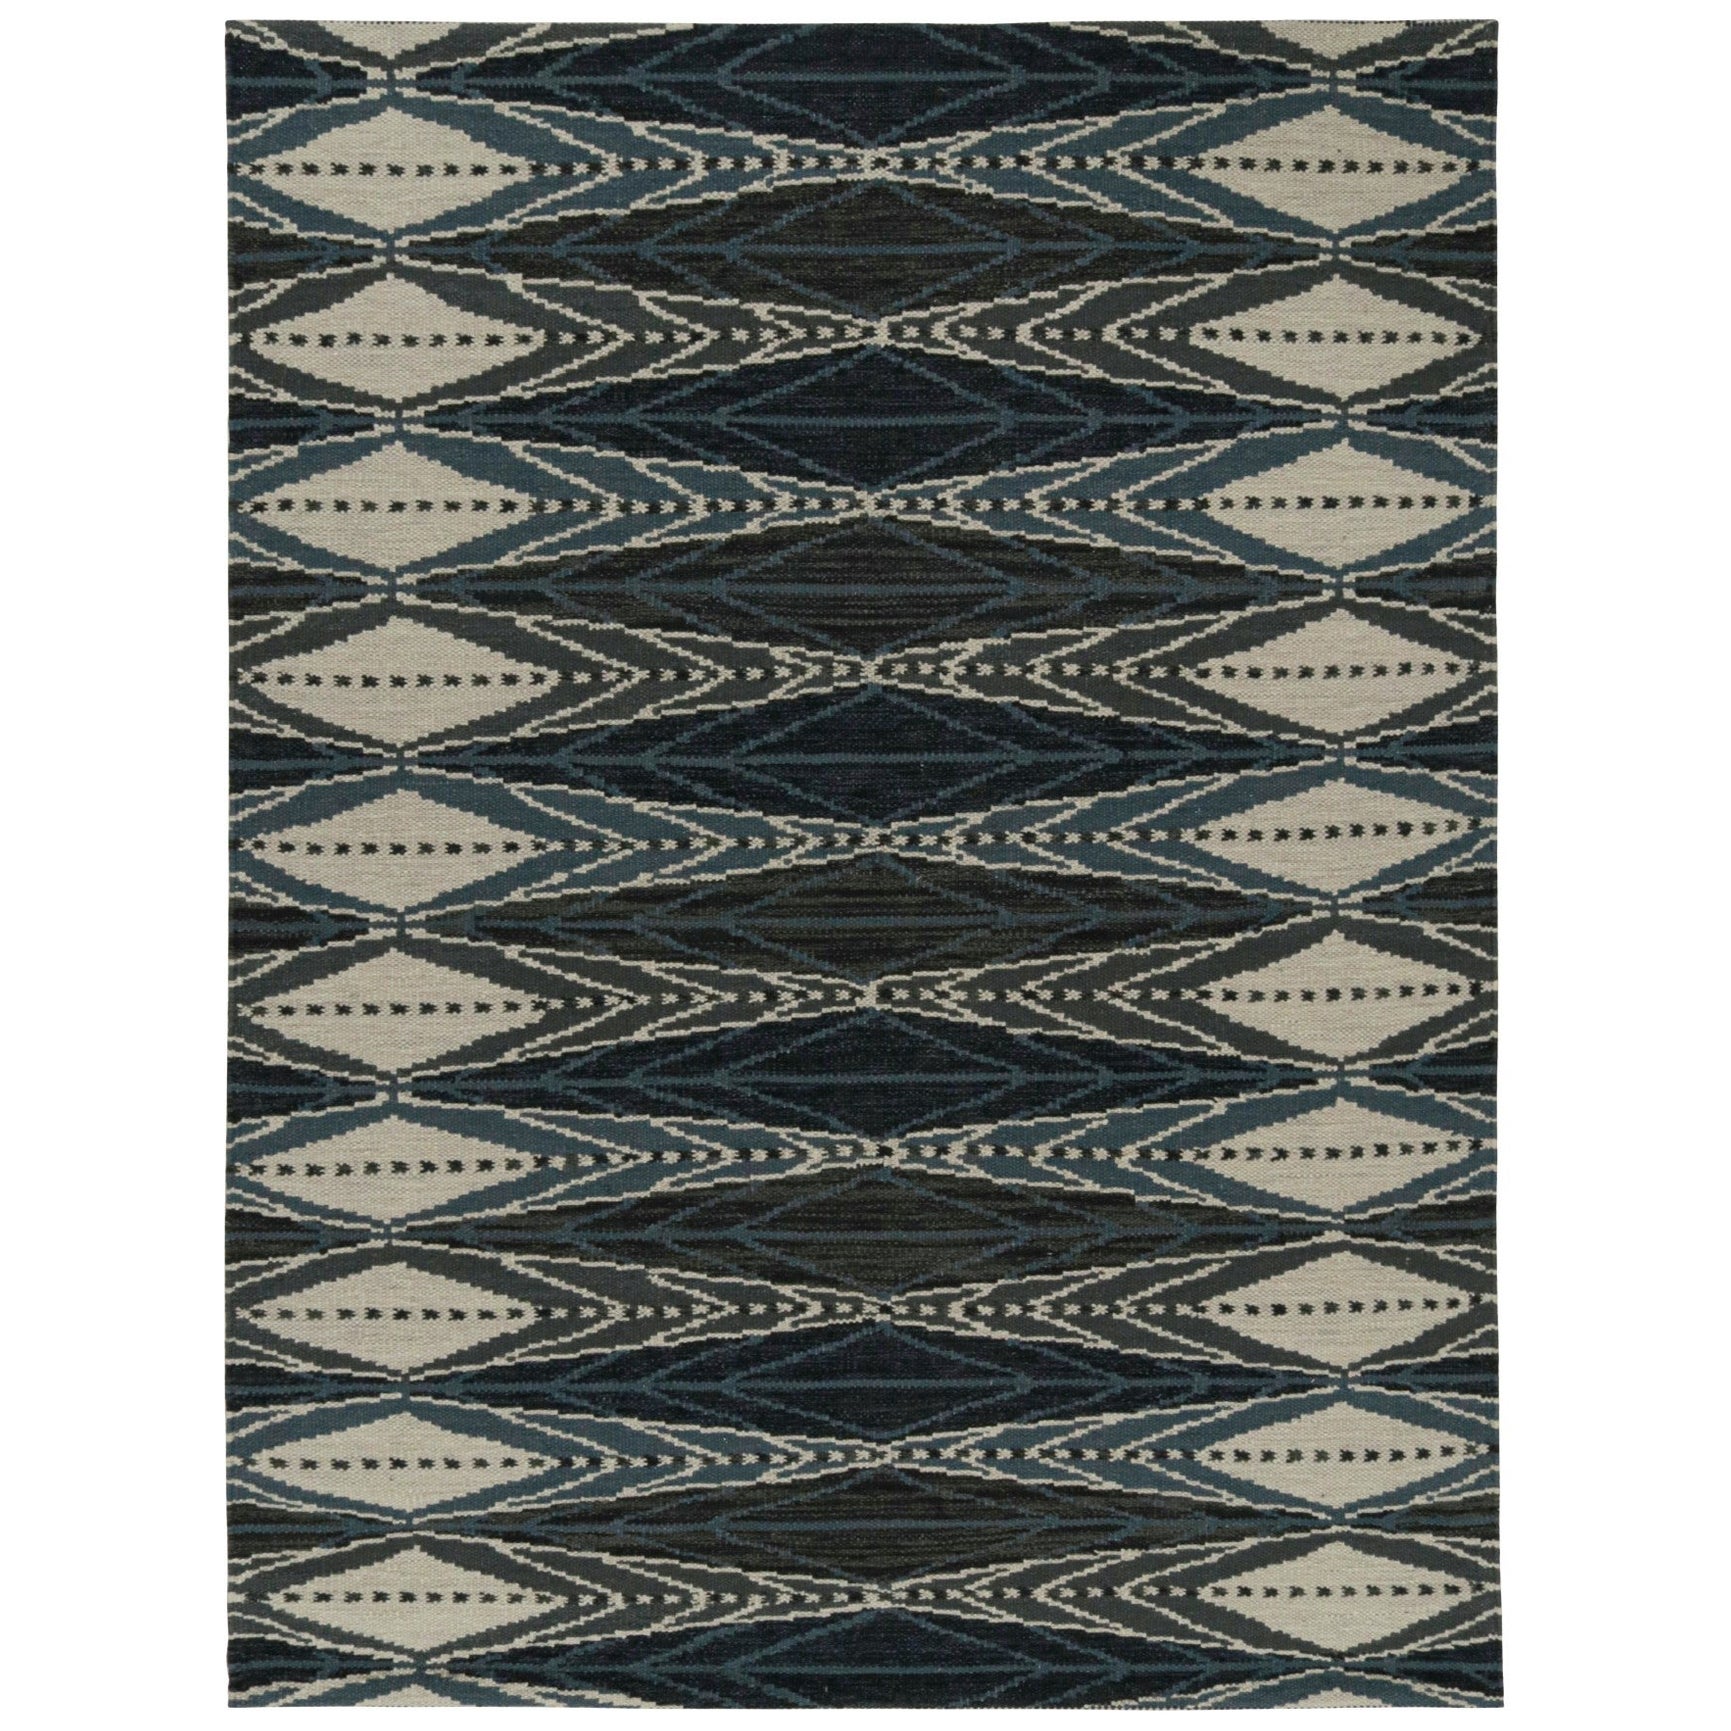 Rug & Kilim's Scandinavian Style Kilim in Blue & Grey Geometric Patterns (Kilim de style scandinave à motifs géométriques bleus et gris)